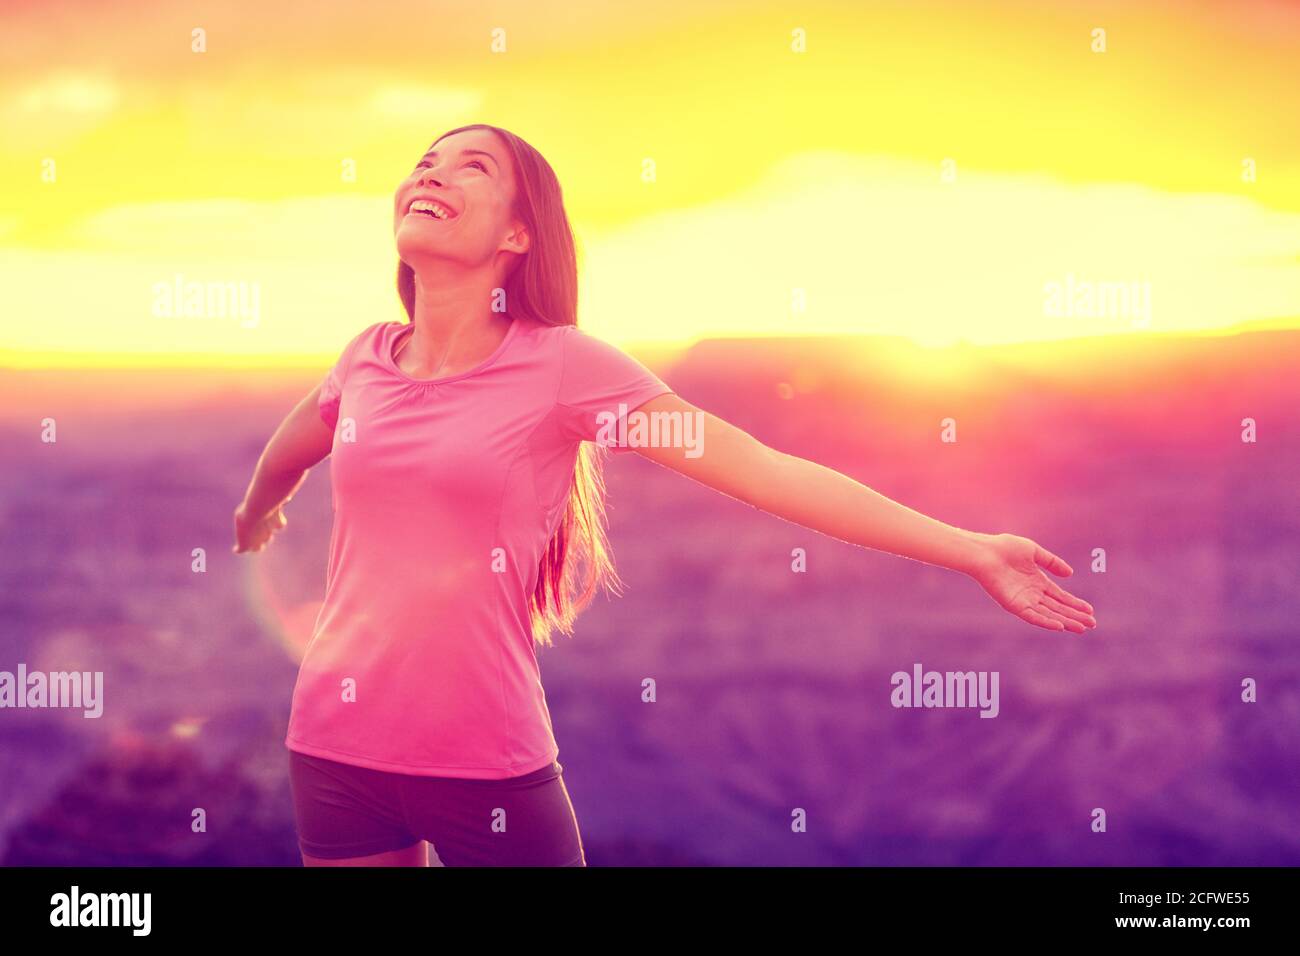 Femme heureuse gratuite profitant du coucher de soleil sur la nature. Concept de liberté, de bonheur et de plaisir de jeune fille asiatique multiraciale aux armes ouvertes dans l'espoir et Banque D'Images